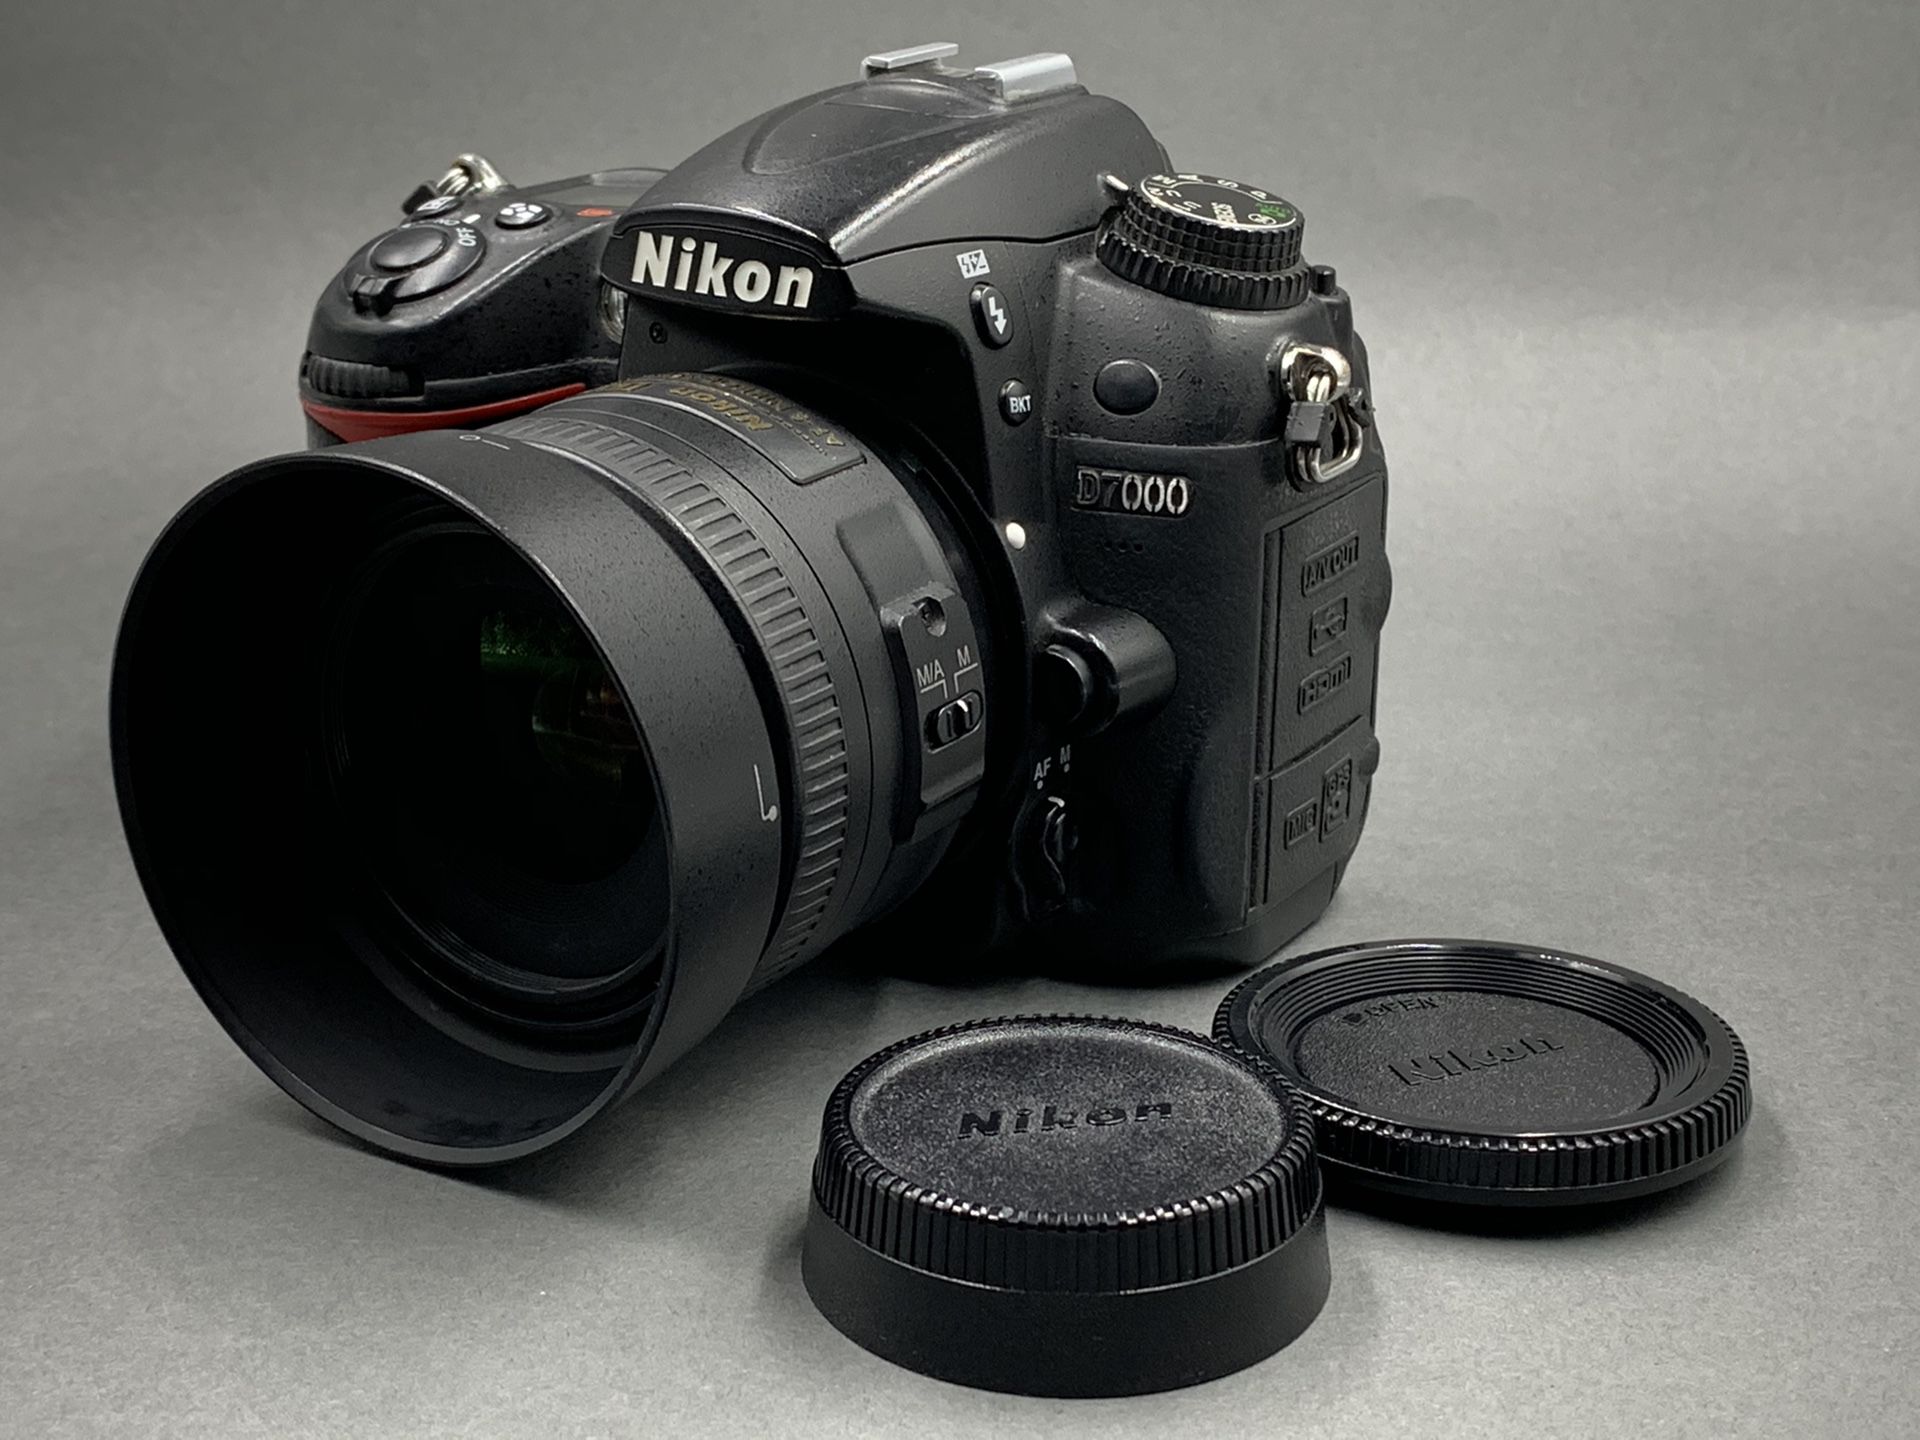 Nikon D7000 16.2 megapixel DSLR body and Nikkor DX 35mm lens